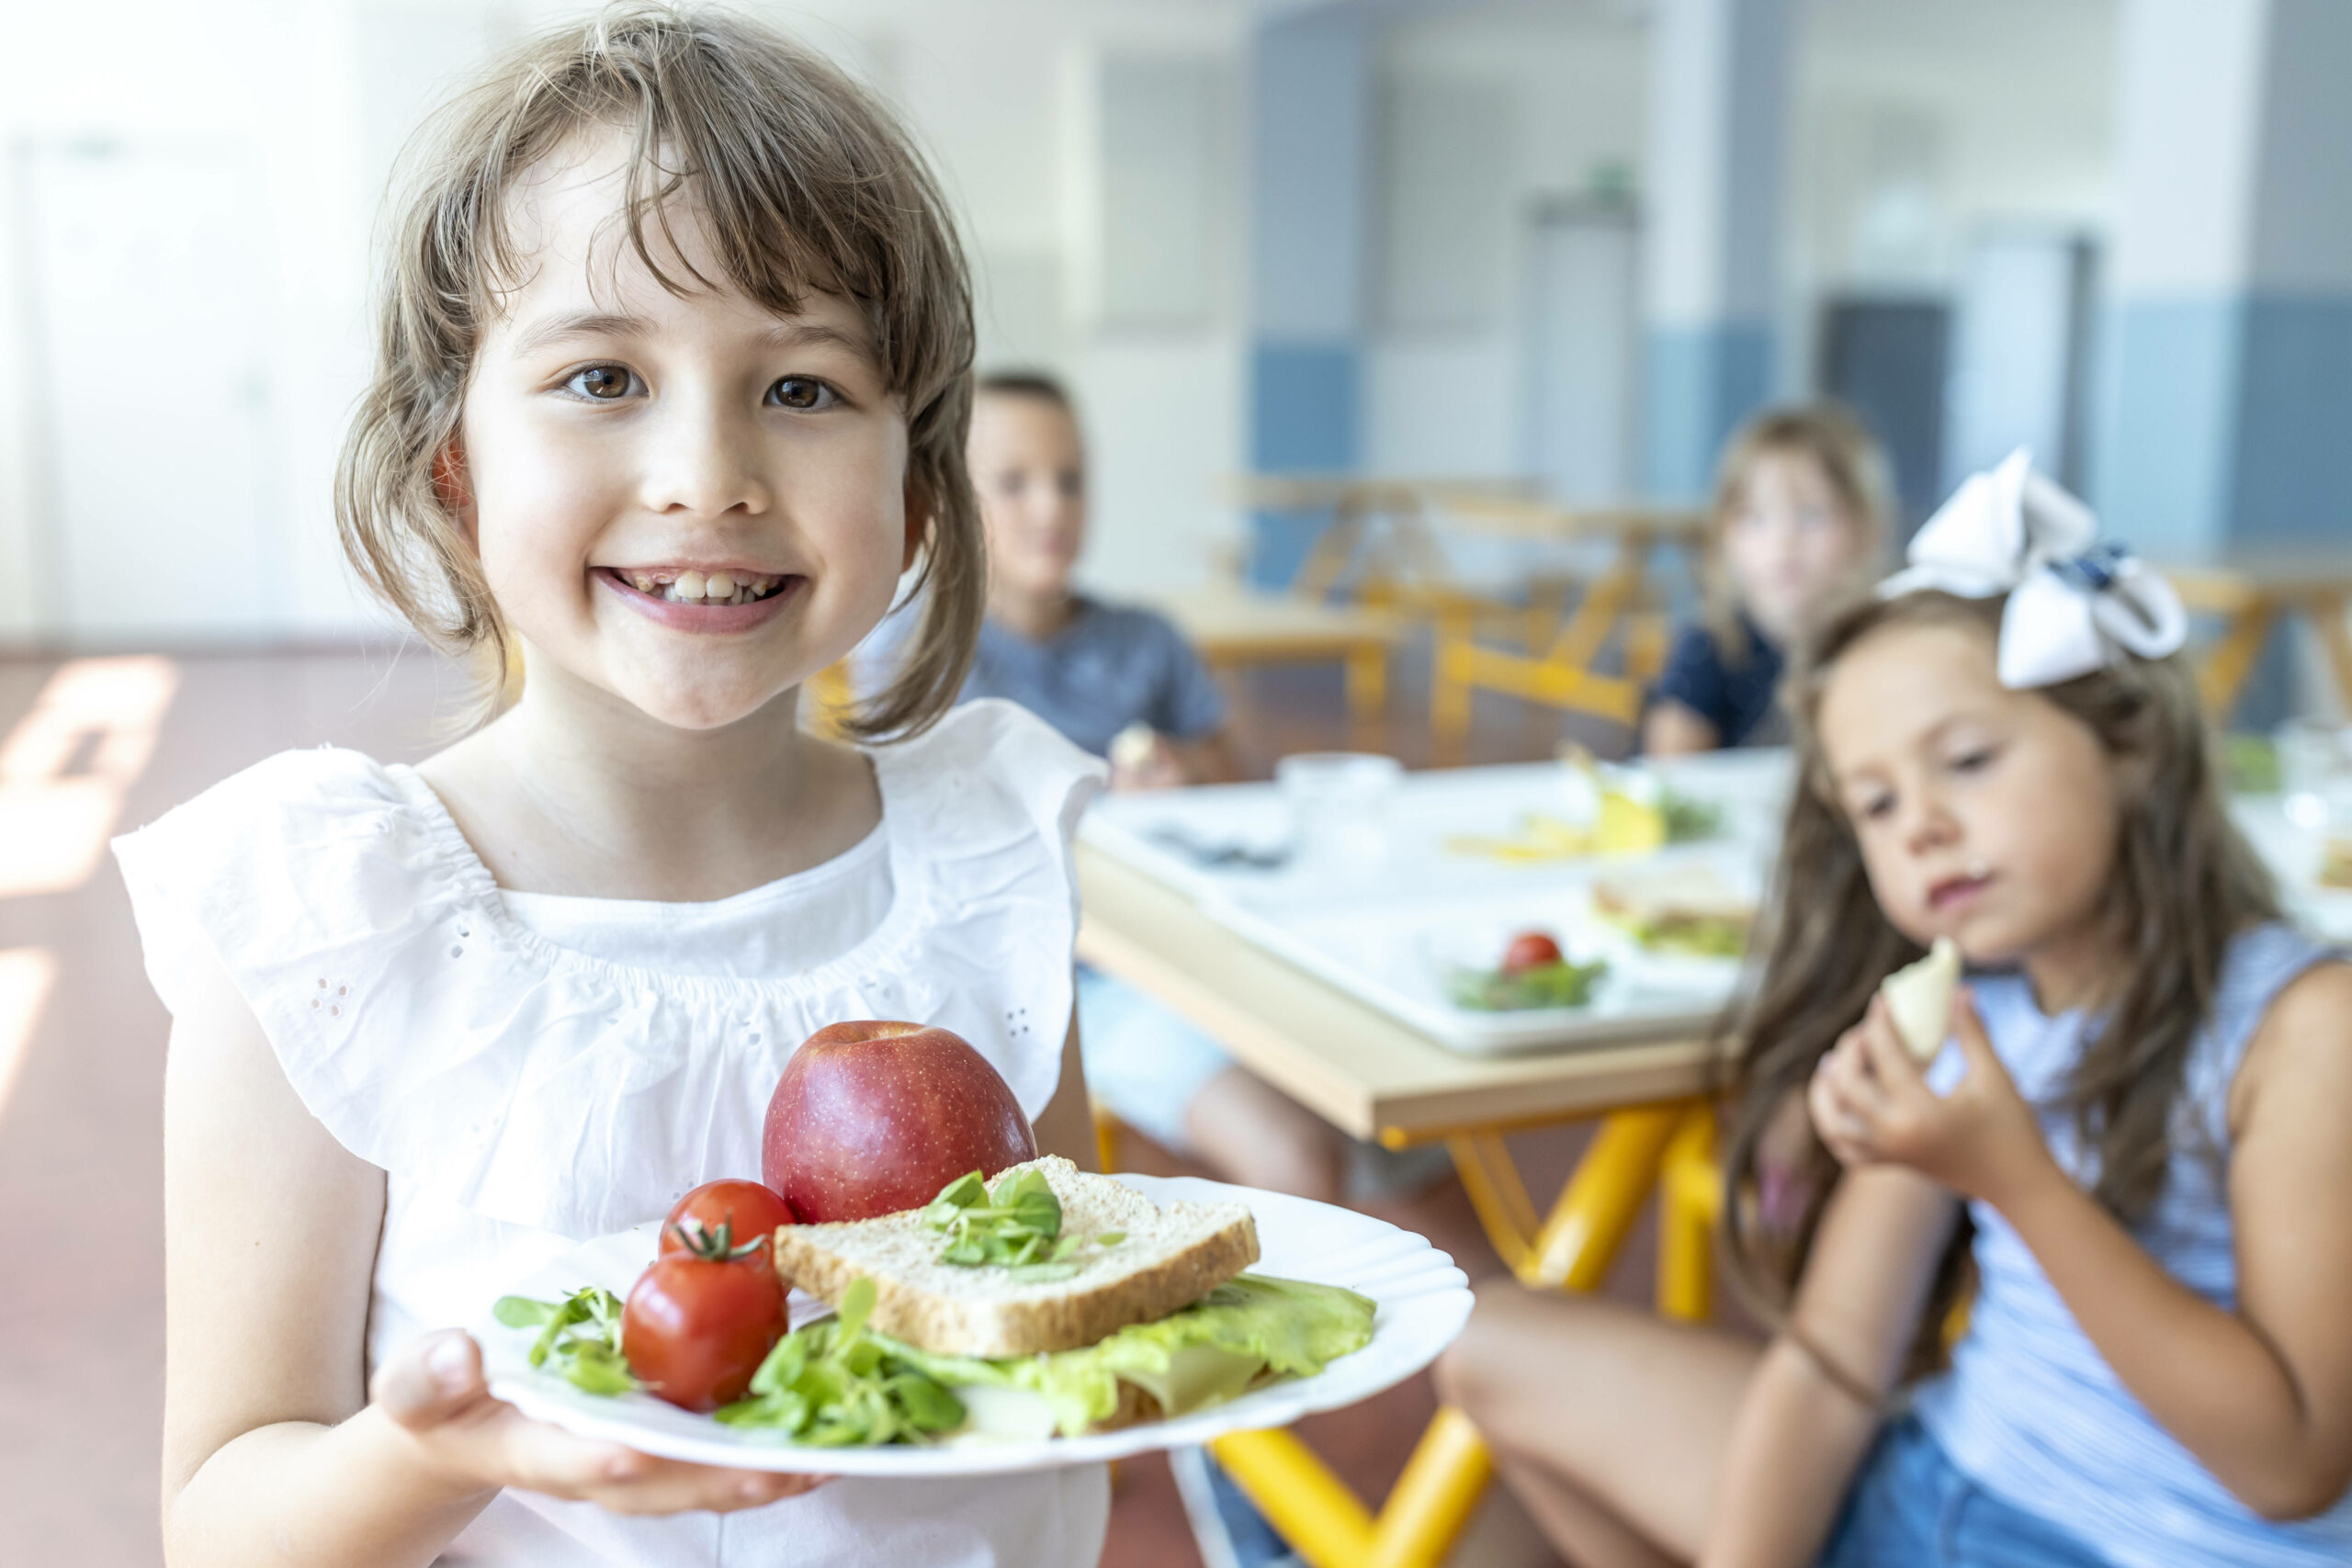 In Hamburgs Schulen soll es bald von der EU finanziertes Obst, Gemüse und Milch geben. (Symbolbild)